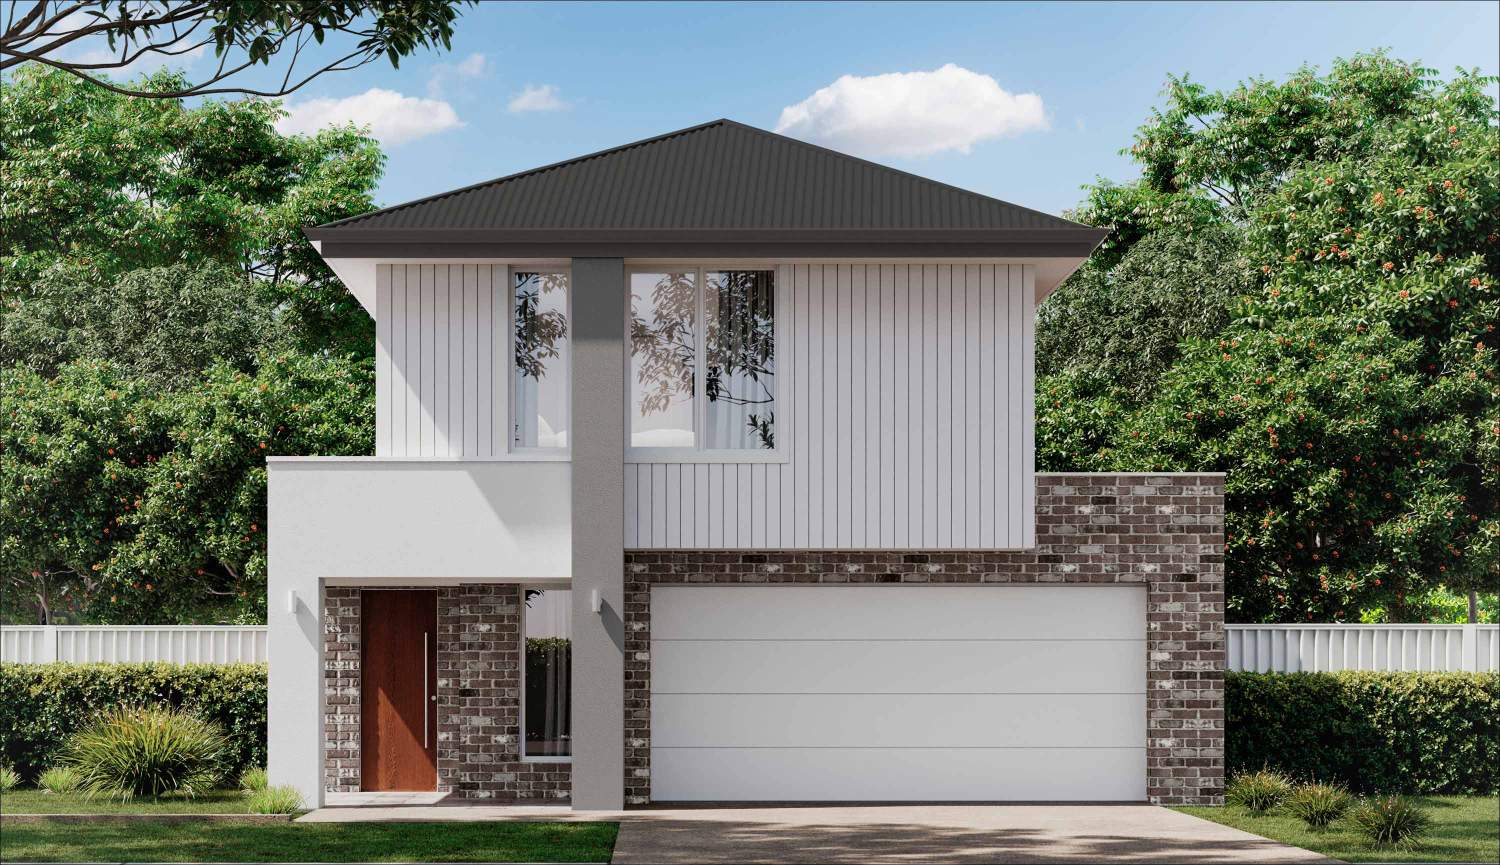 Morphett-two-storey-home-design-contemporary-facade